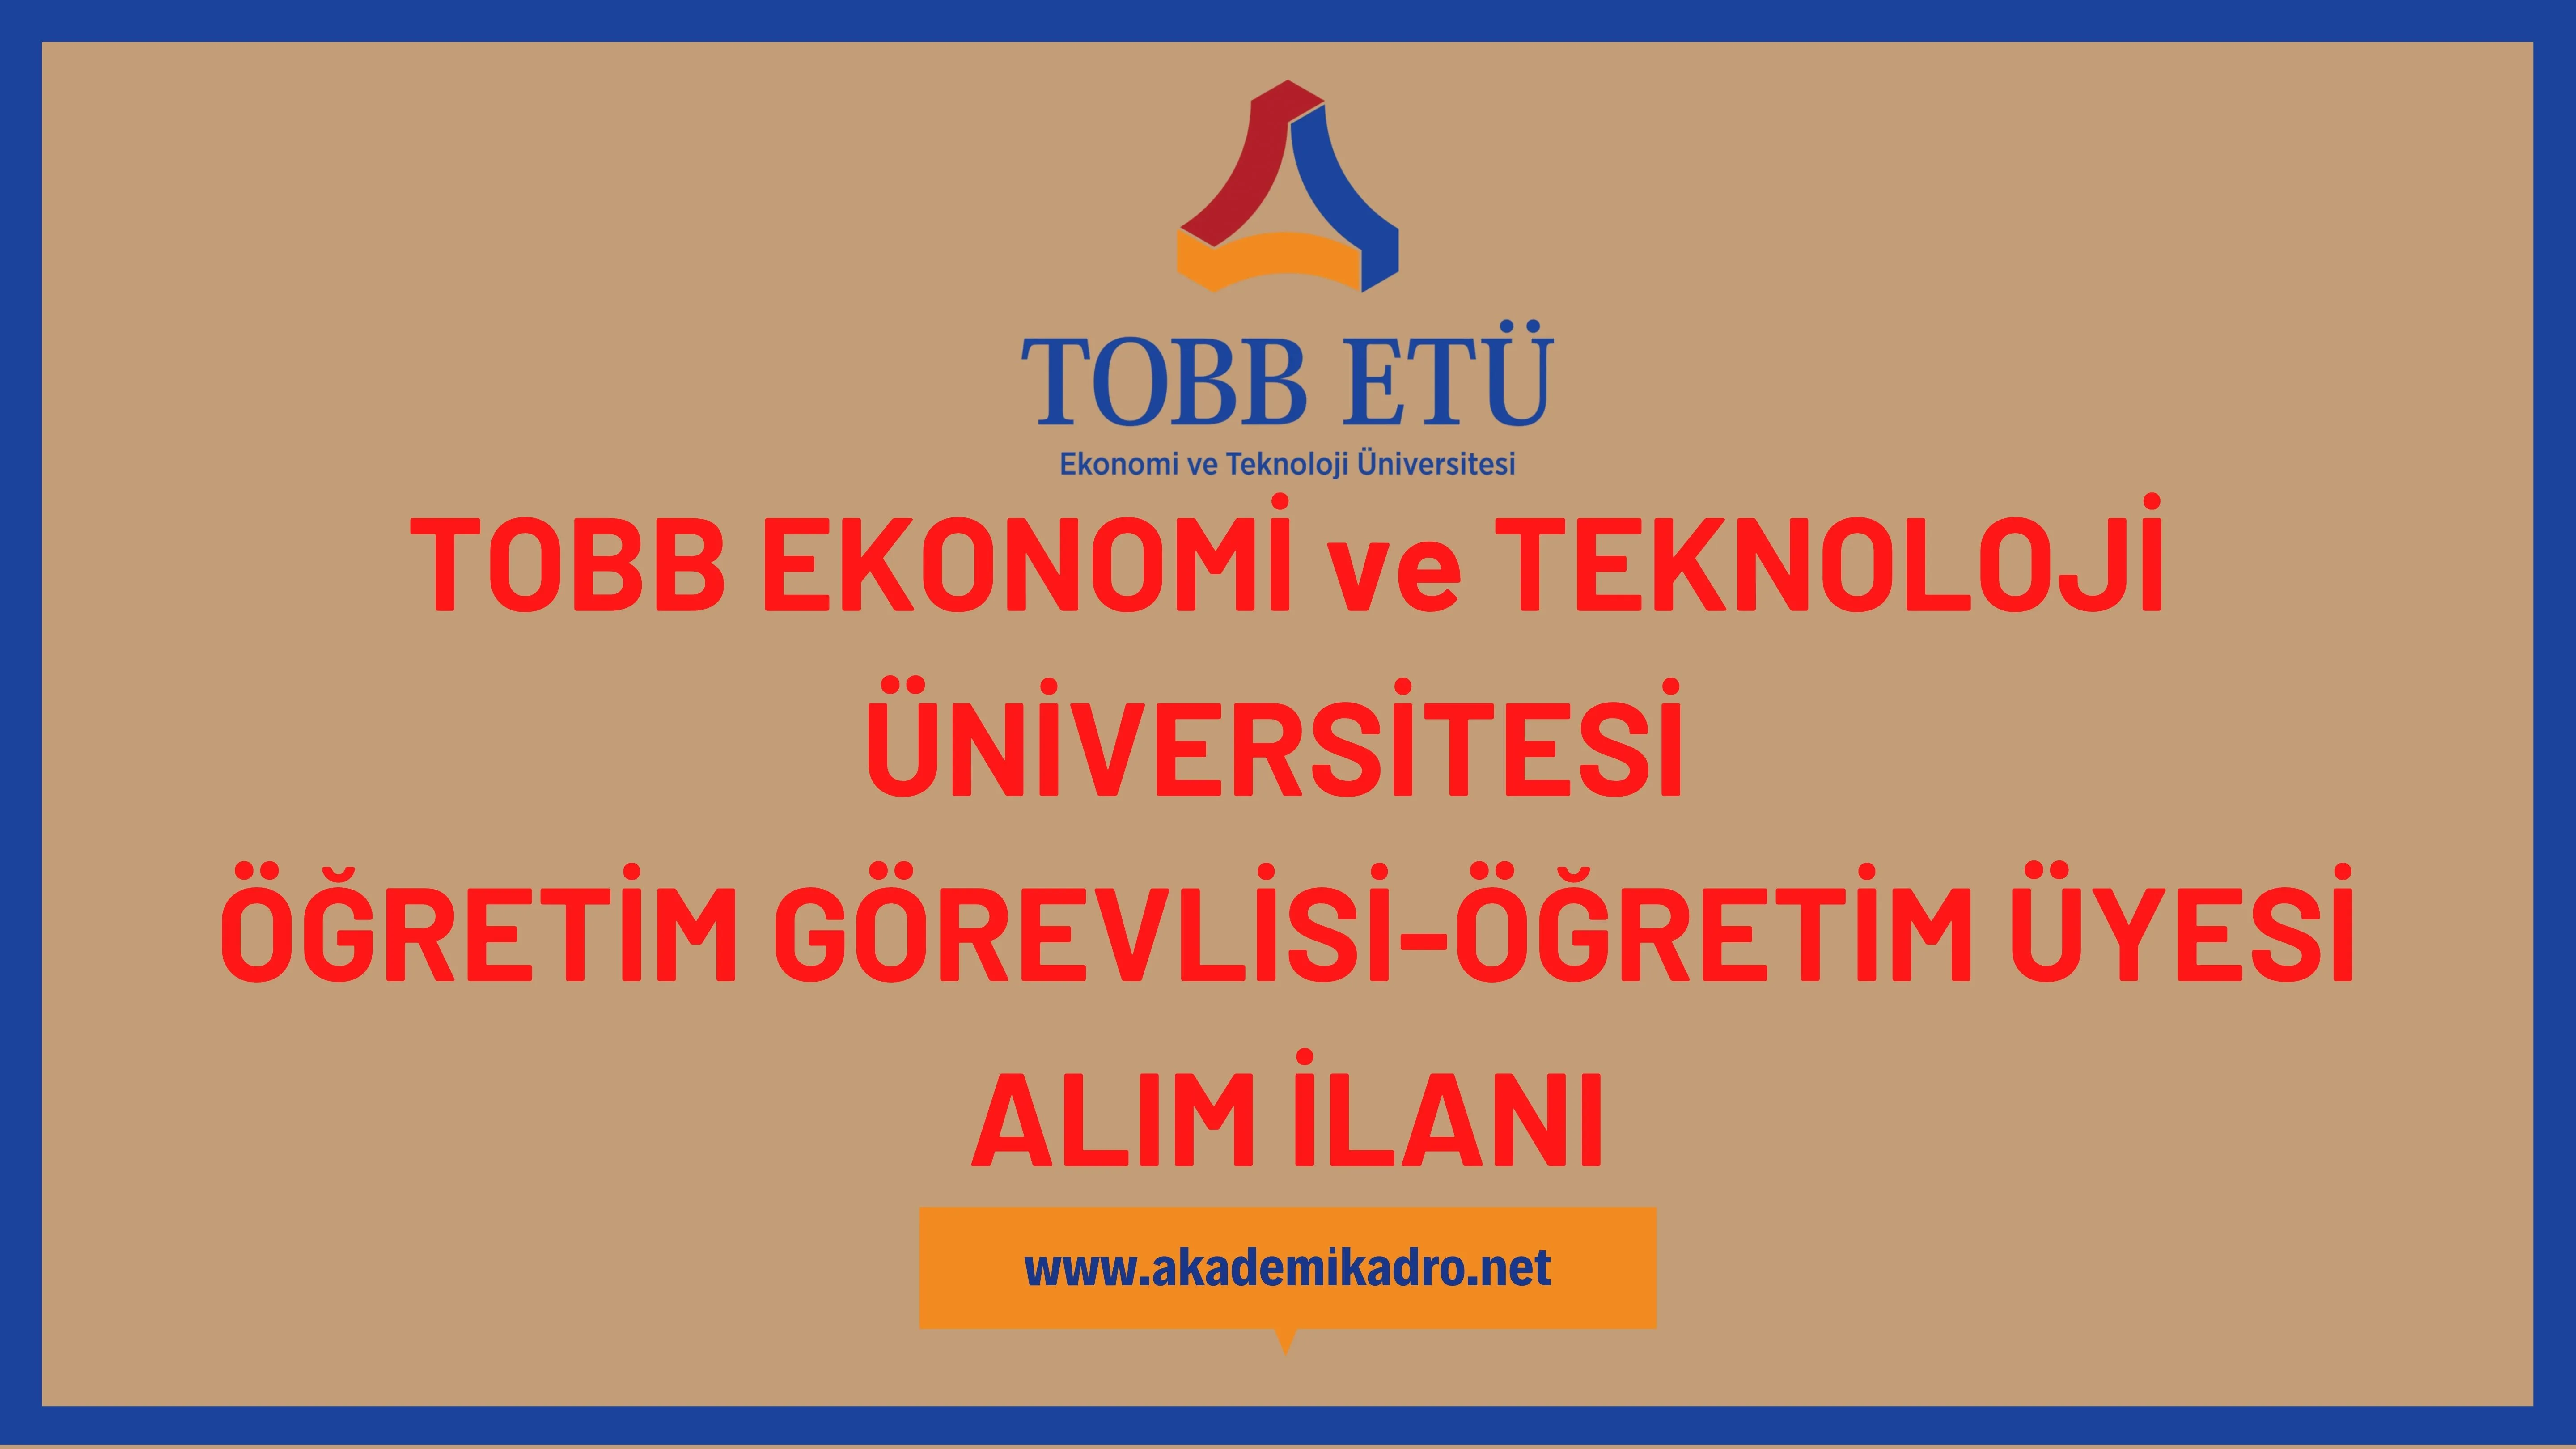 TOBB Ekonomi ve Teknoloji Üniversitesi 2 Öğretim görevlisi alacaktır. Son başvuru tarihi 31 Mart 2023